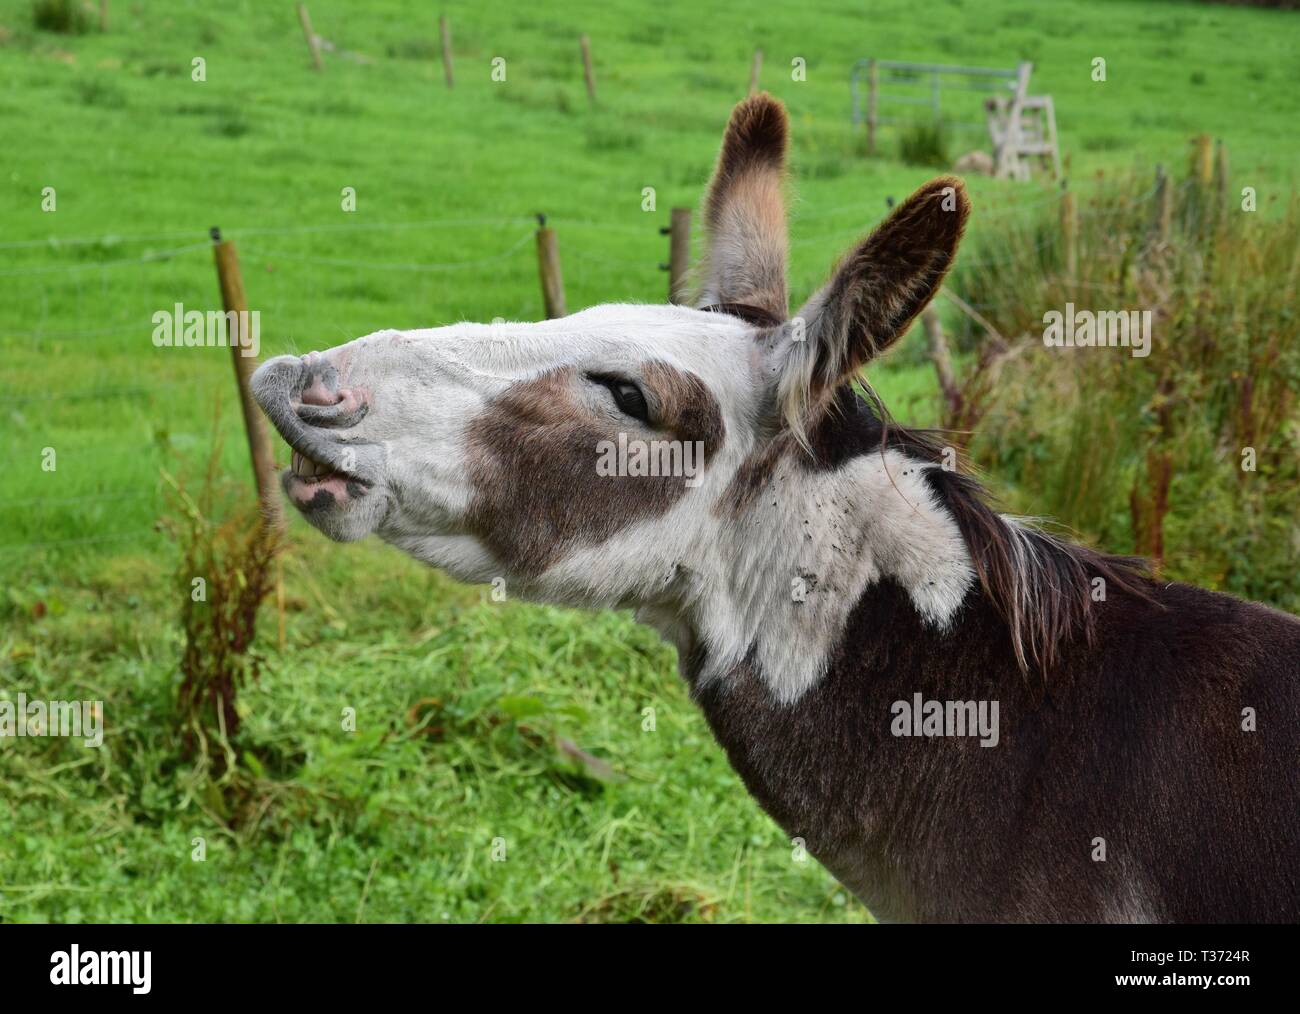 A cute flehming donkey on a meadow in Ireland. Stock Photo